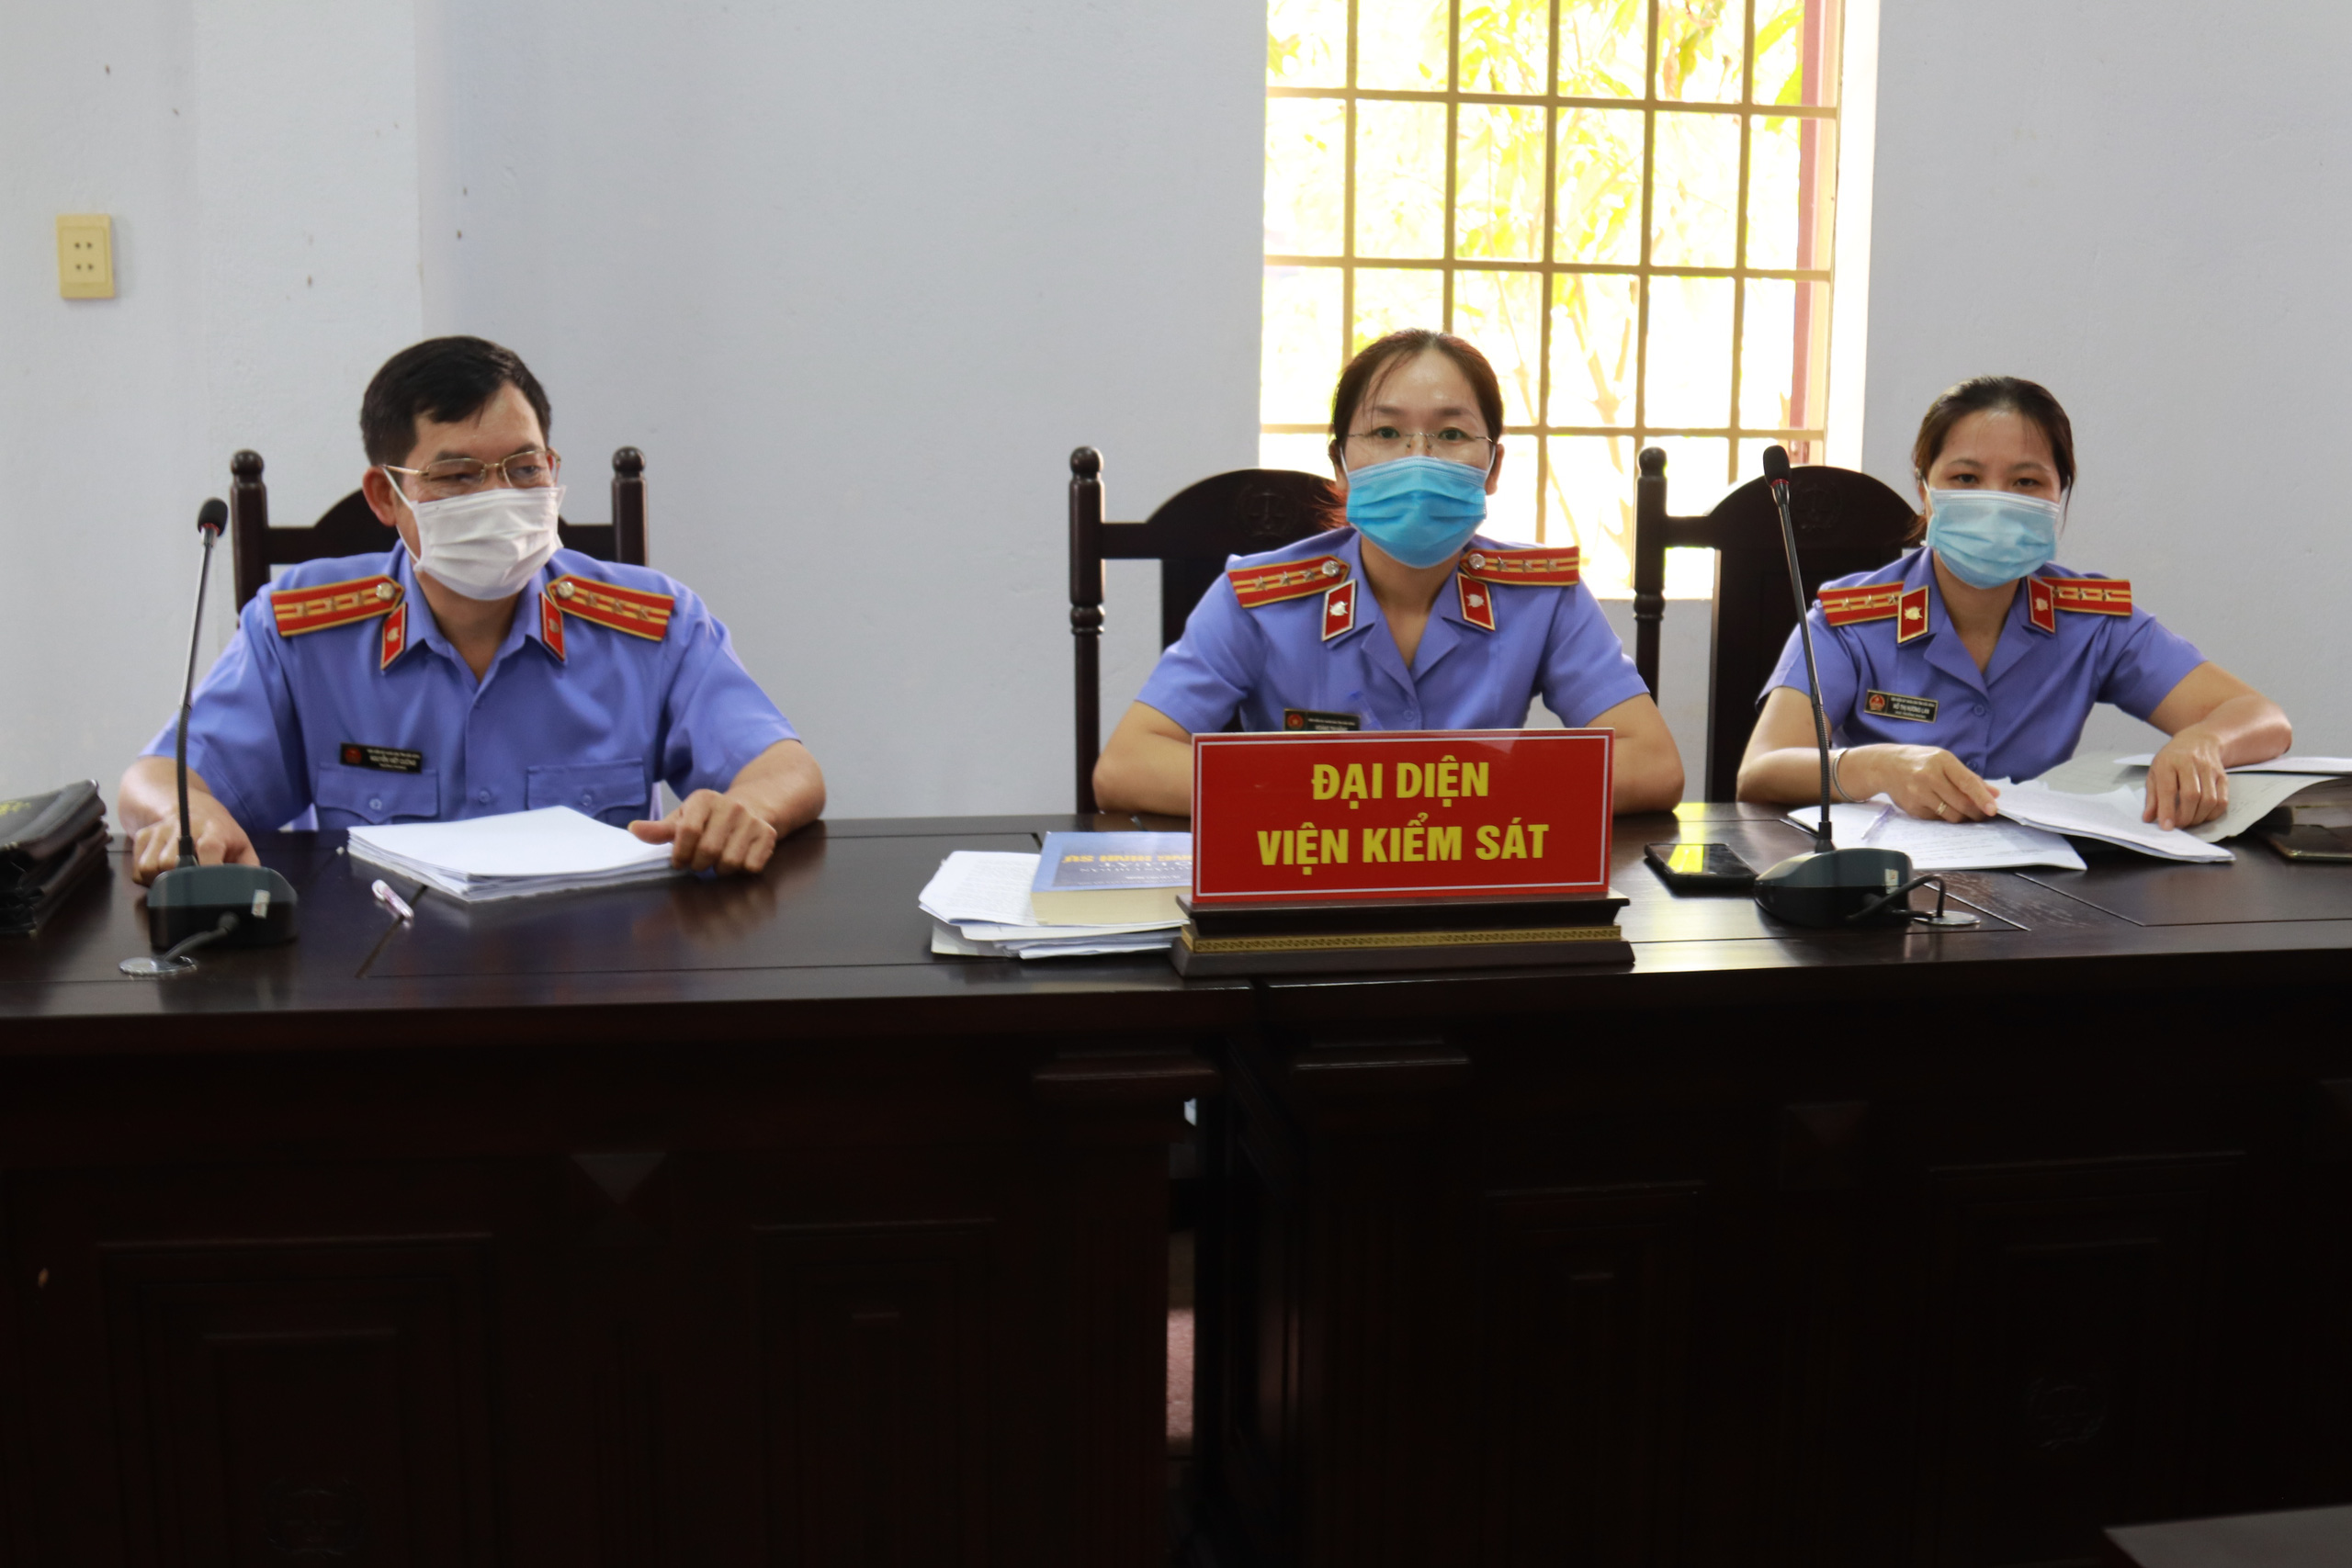 Toàn cảnh phiên tòa xét xử đường dây sản xuất xăng giả của Trịnh Sướng - Ảnh 8.